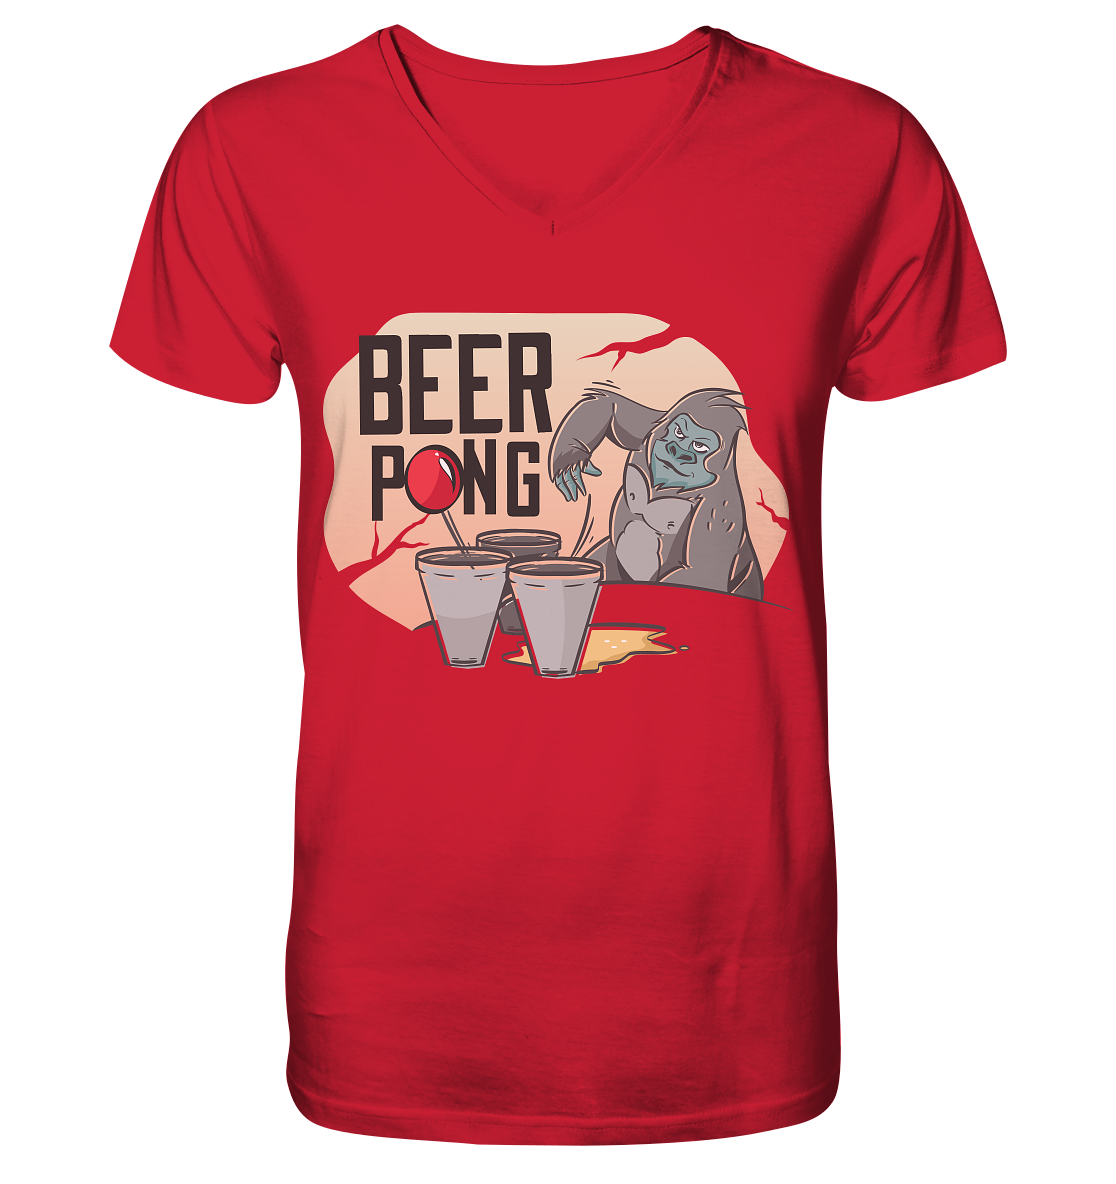 Bier - Beer Pong Gorilla  - Mens Organic V-Neck Shirt